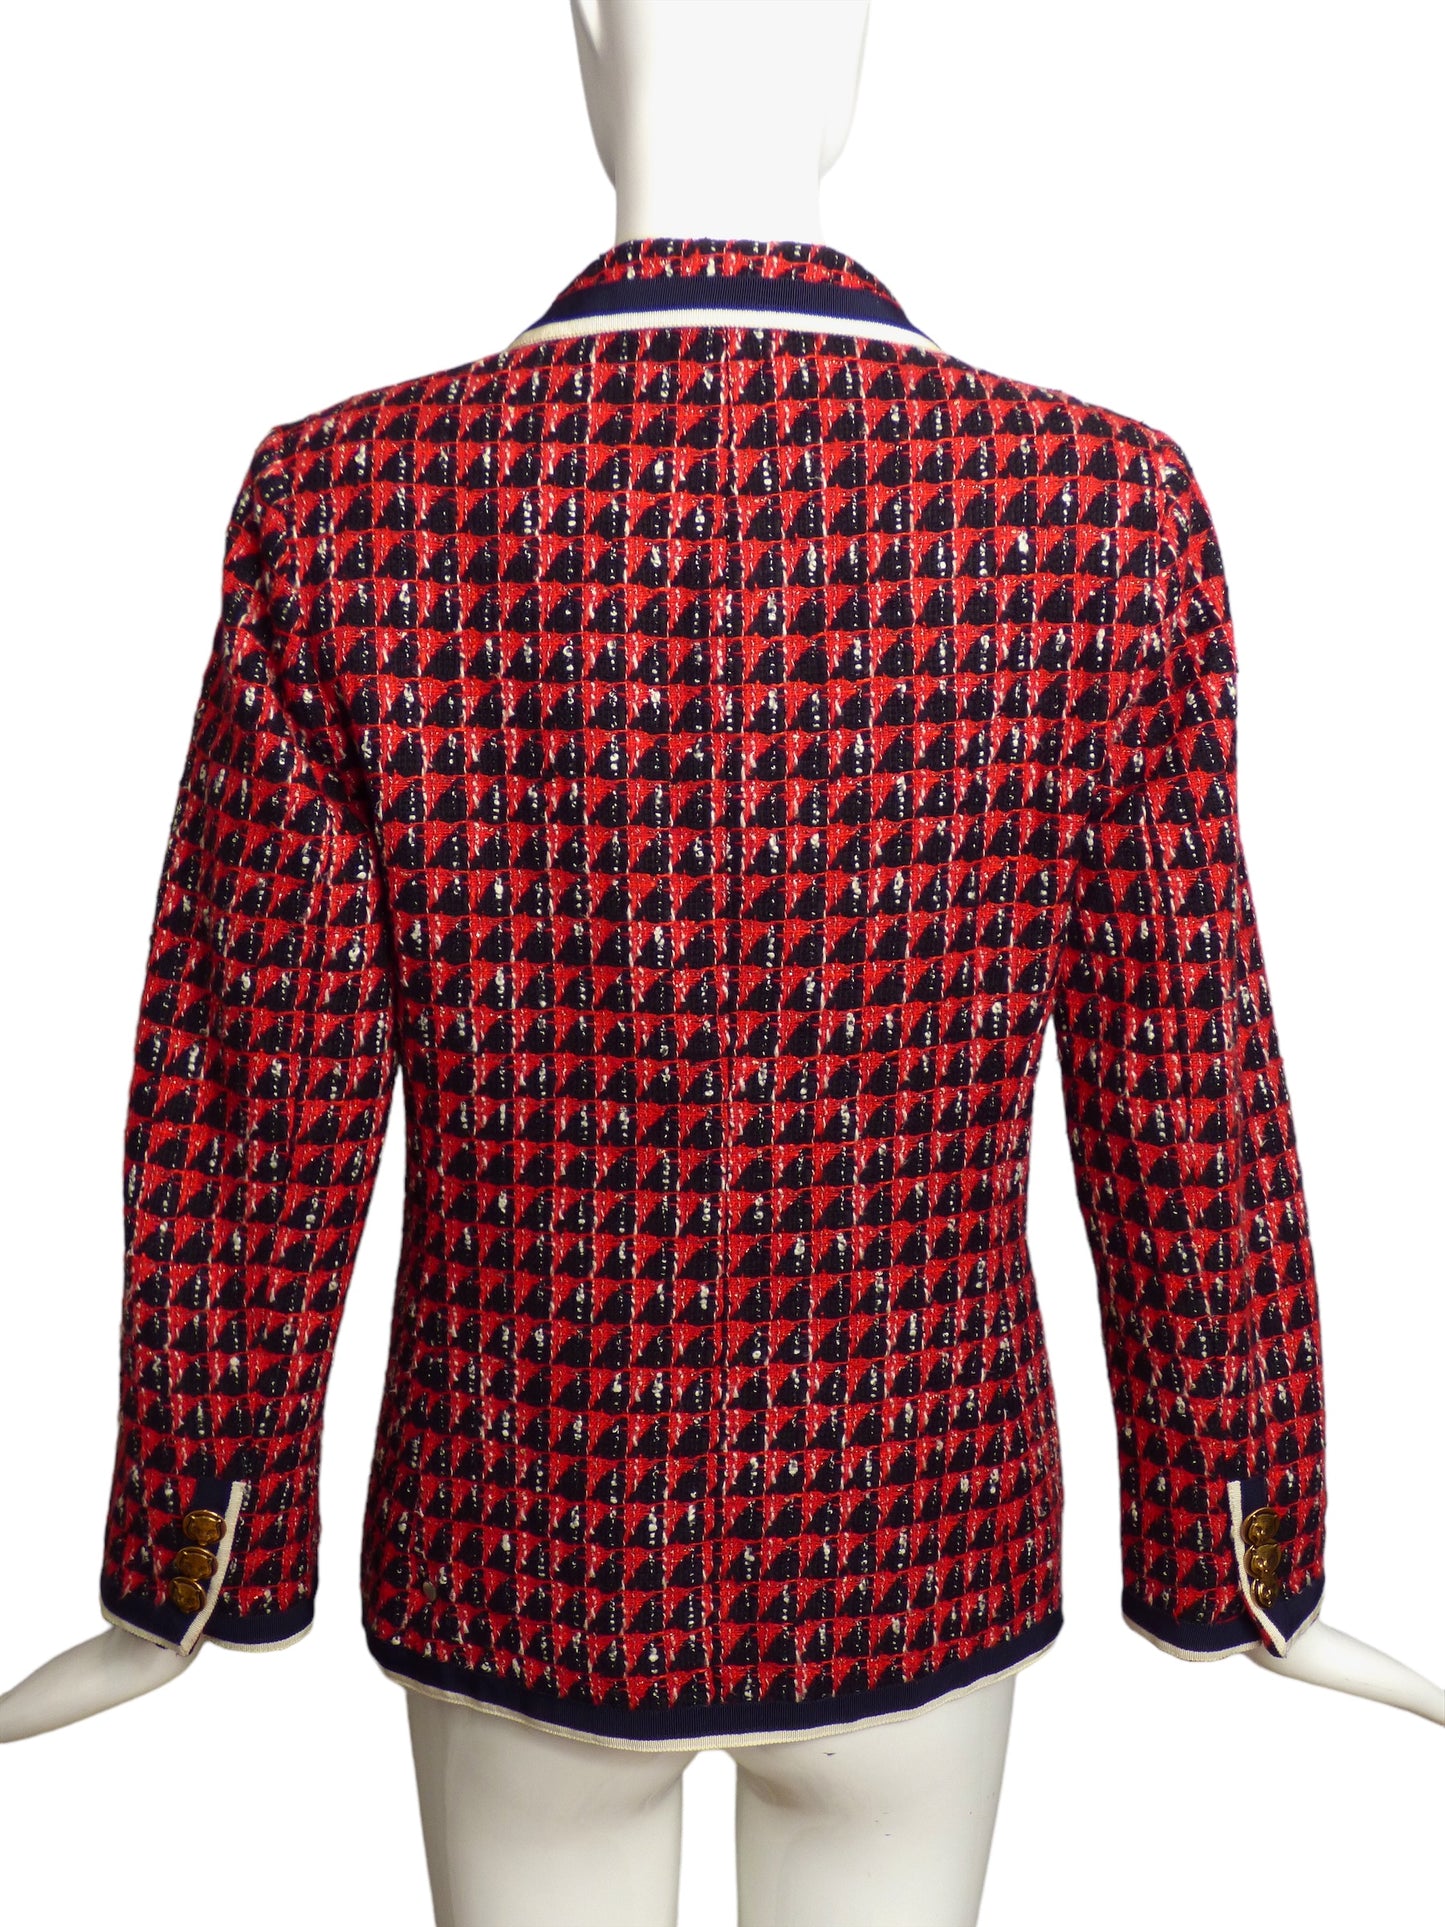 GUCCI- 2019 Red & Navy Tweed Blazer, Size 8